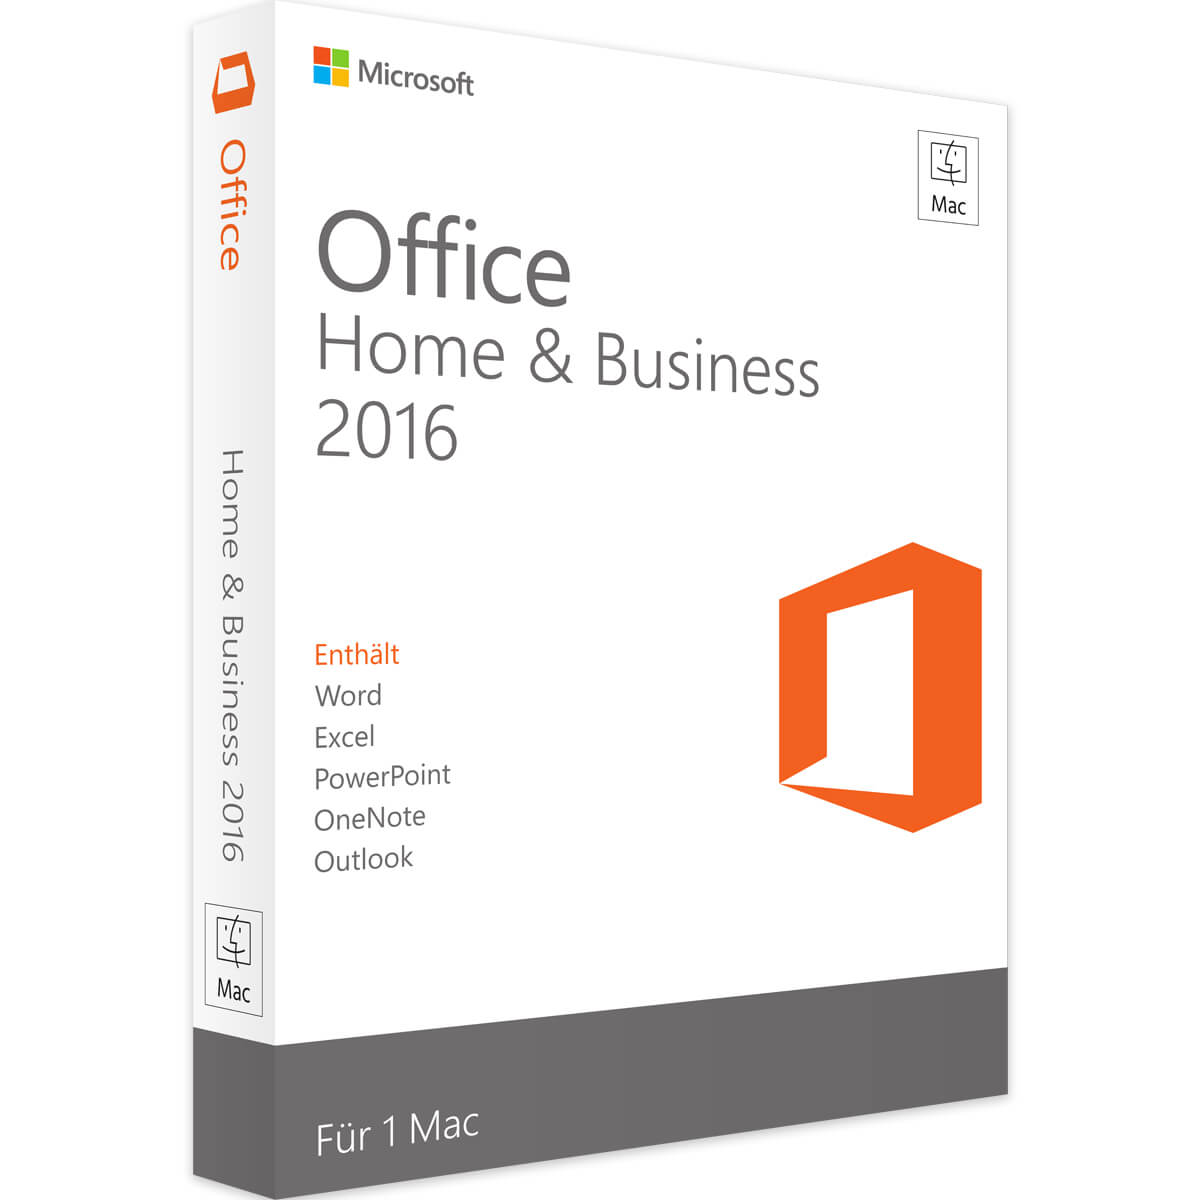 Office 2016 Home and Business Mac è disponibile per il download qui